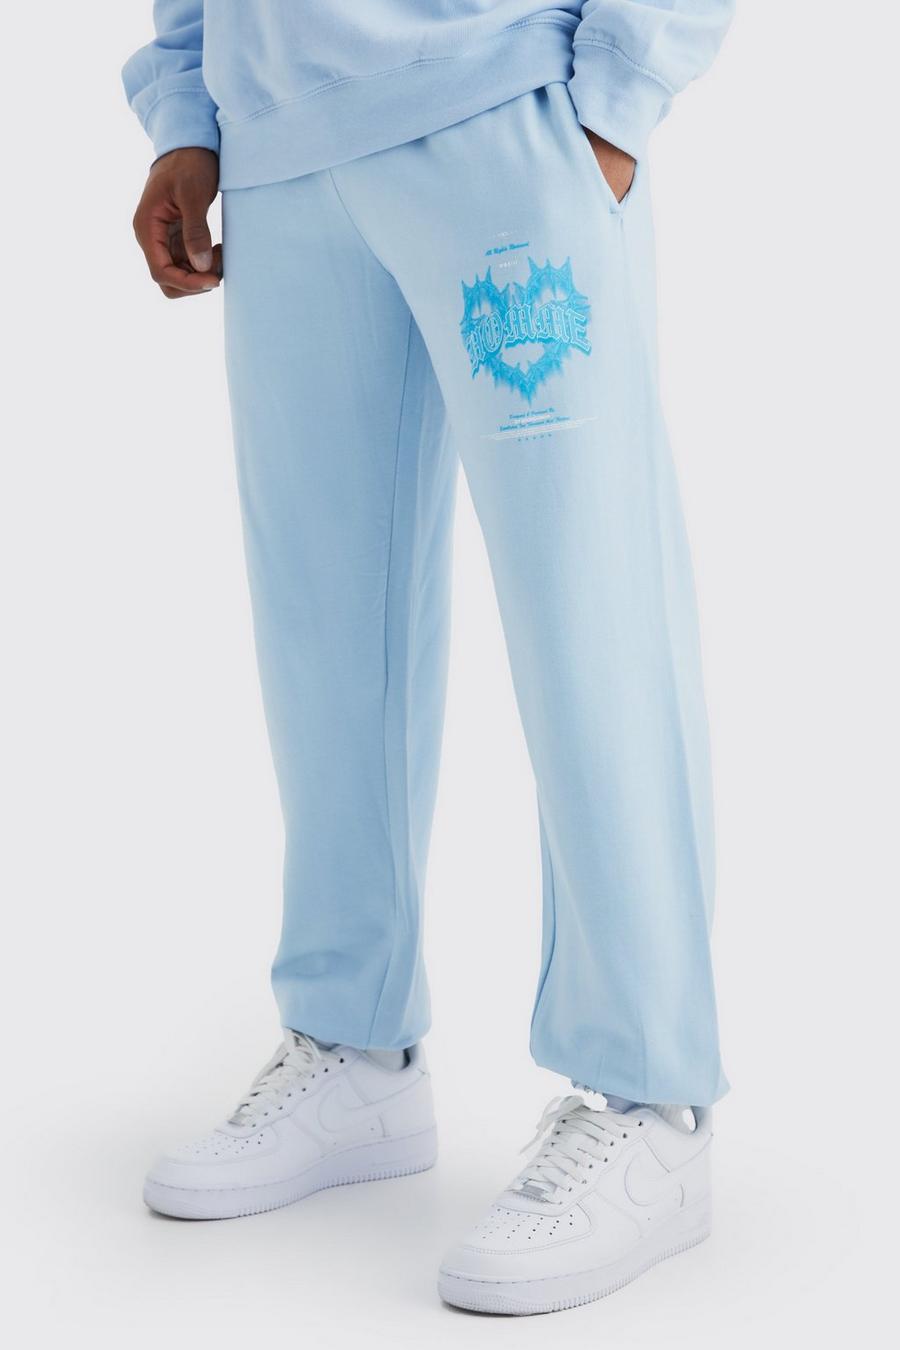 Pantalón deportivo con estampado gráfico Homme de corazón, Light blue